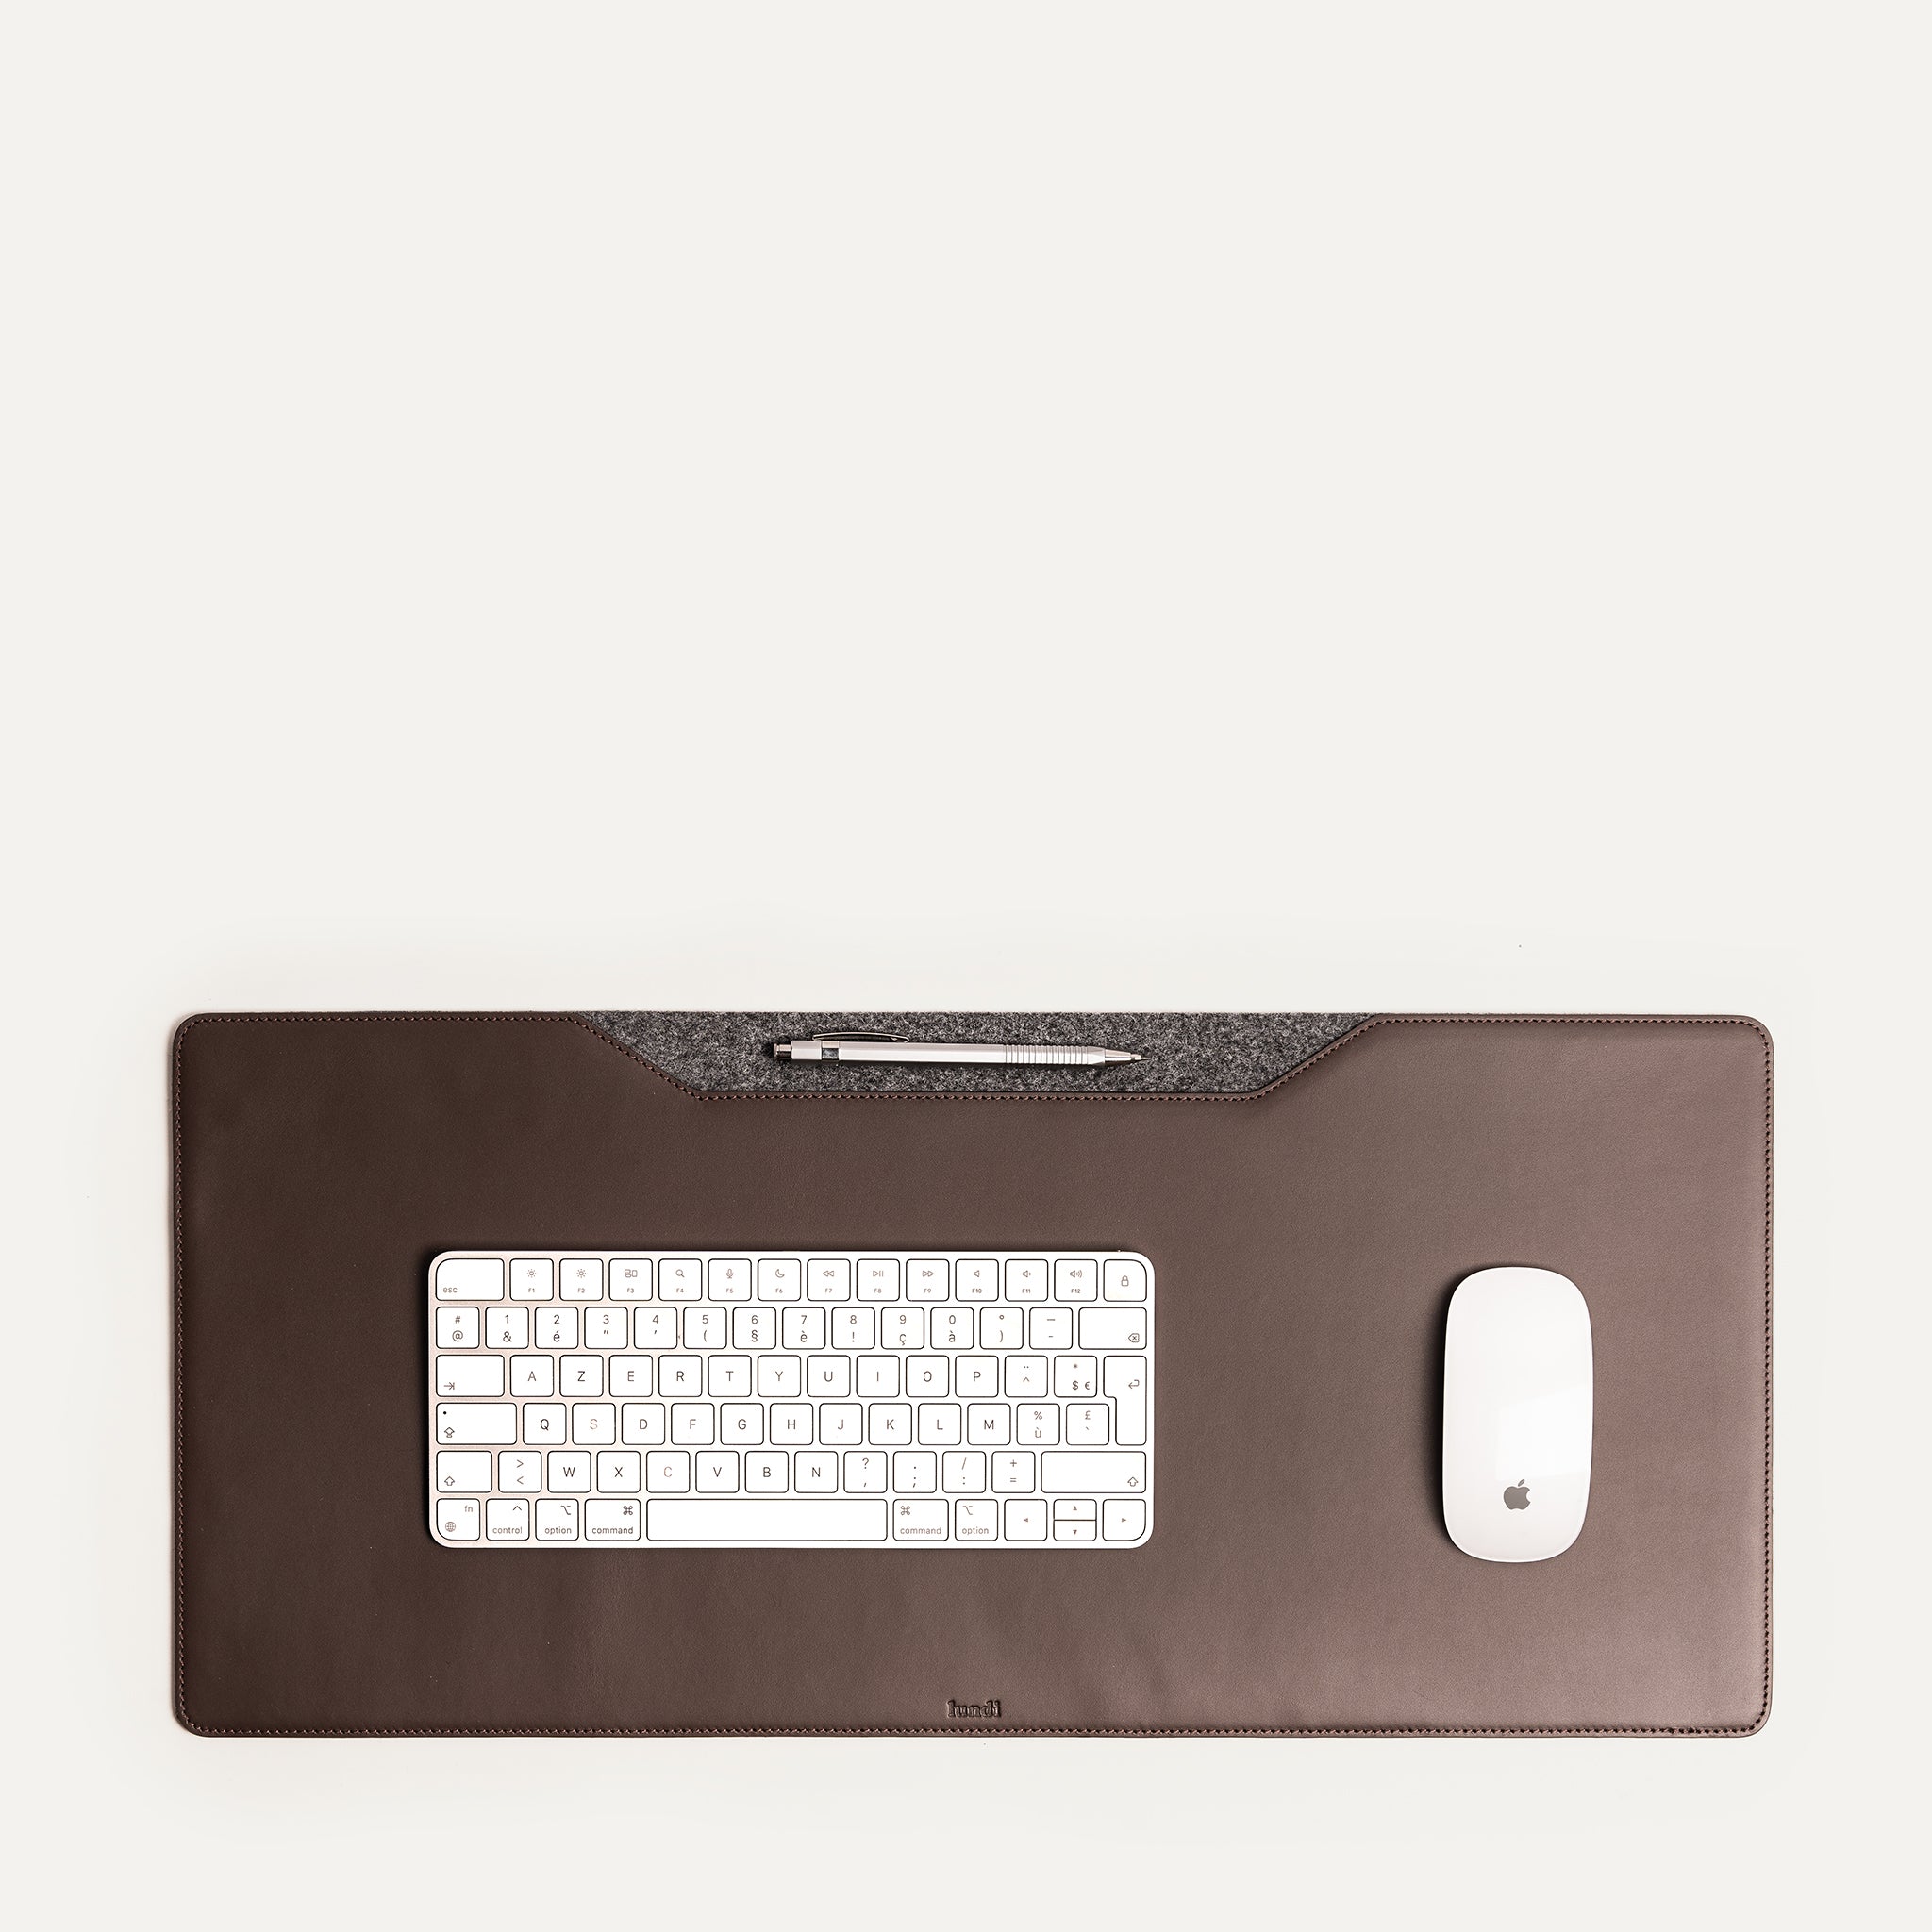 Leather Desk Mat - L Size | LILIO Chestnut